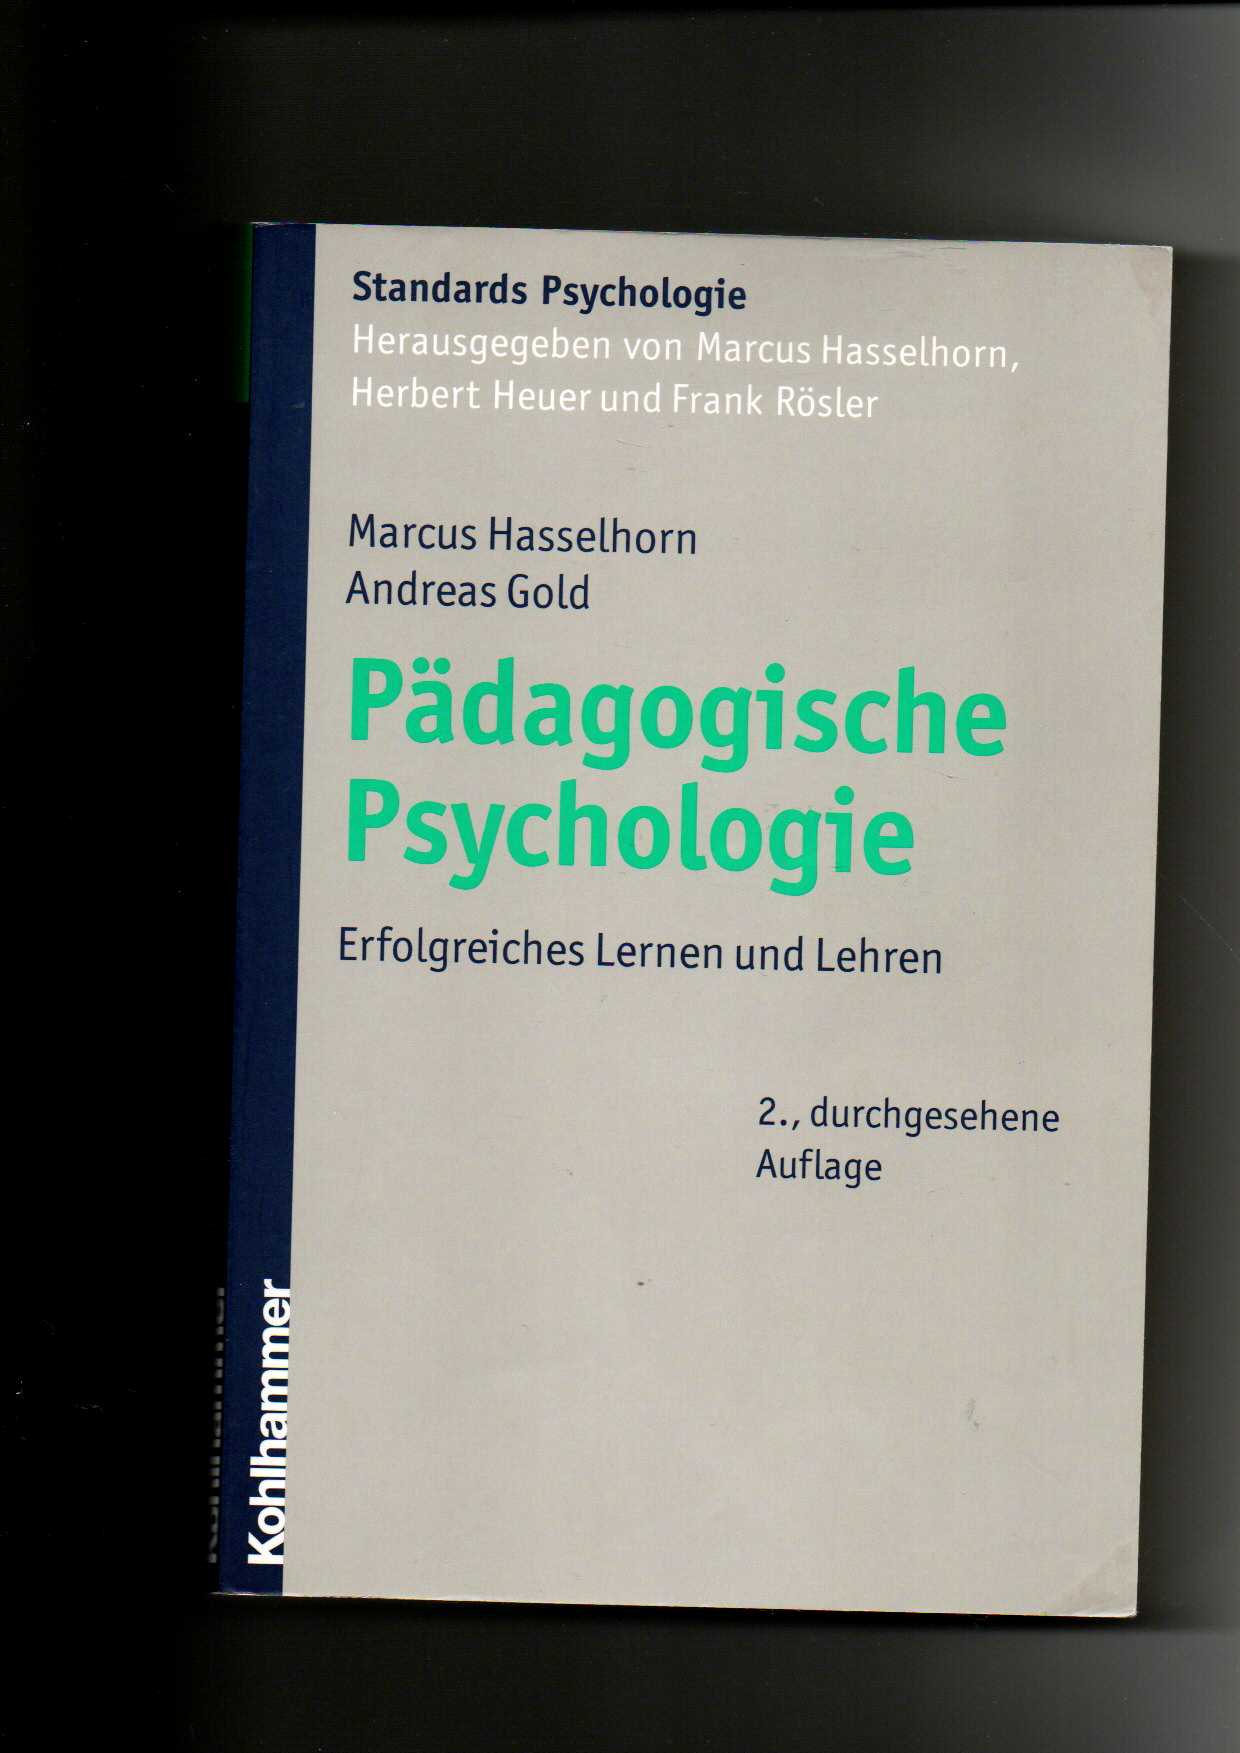 Marcus Hasselhorn, Andreas Gold, Pädagogische Psychologie : erfolgreiches Lernen und Lehren.  2. Auflage - Hasselhorn, Marcus und Andreas Gold